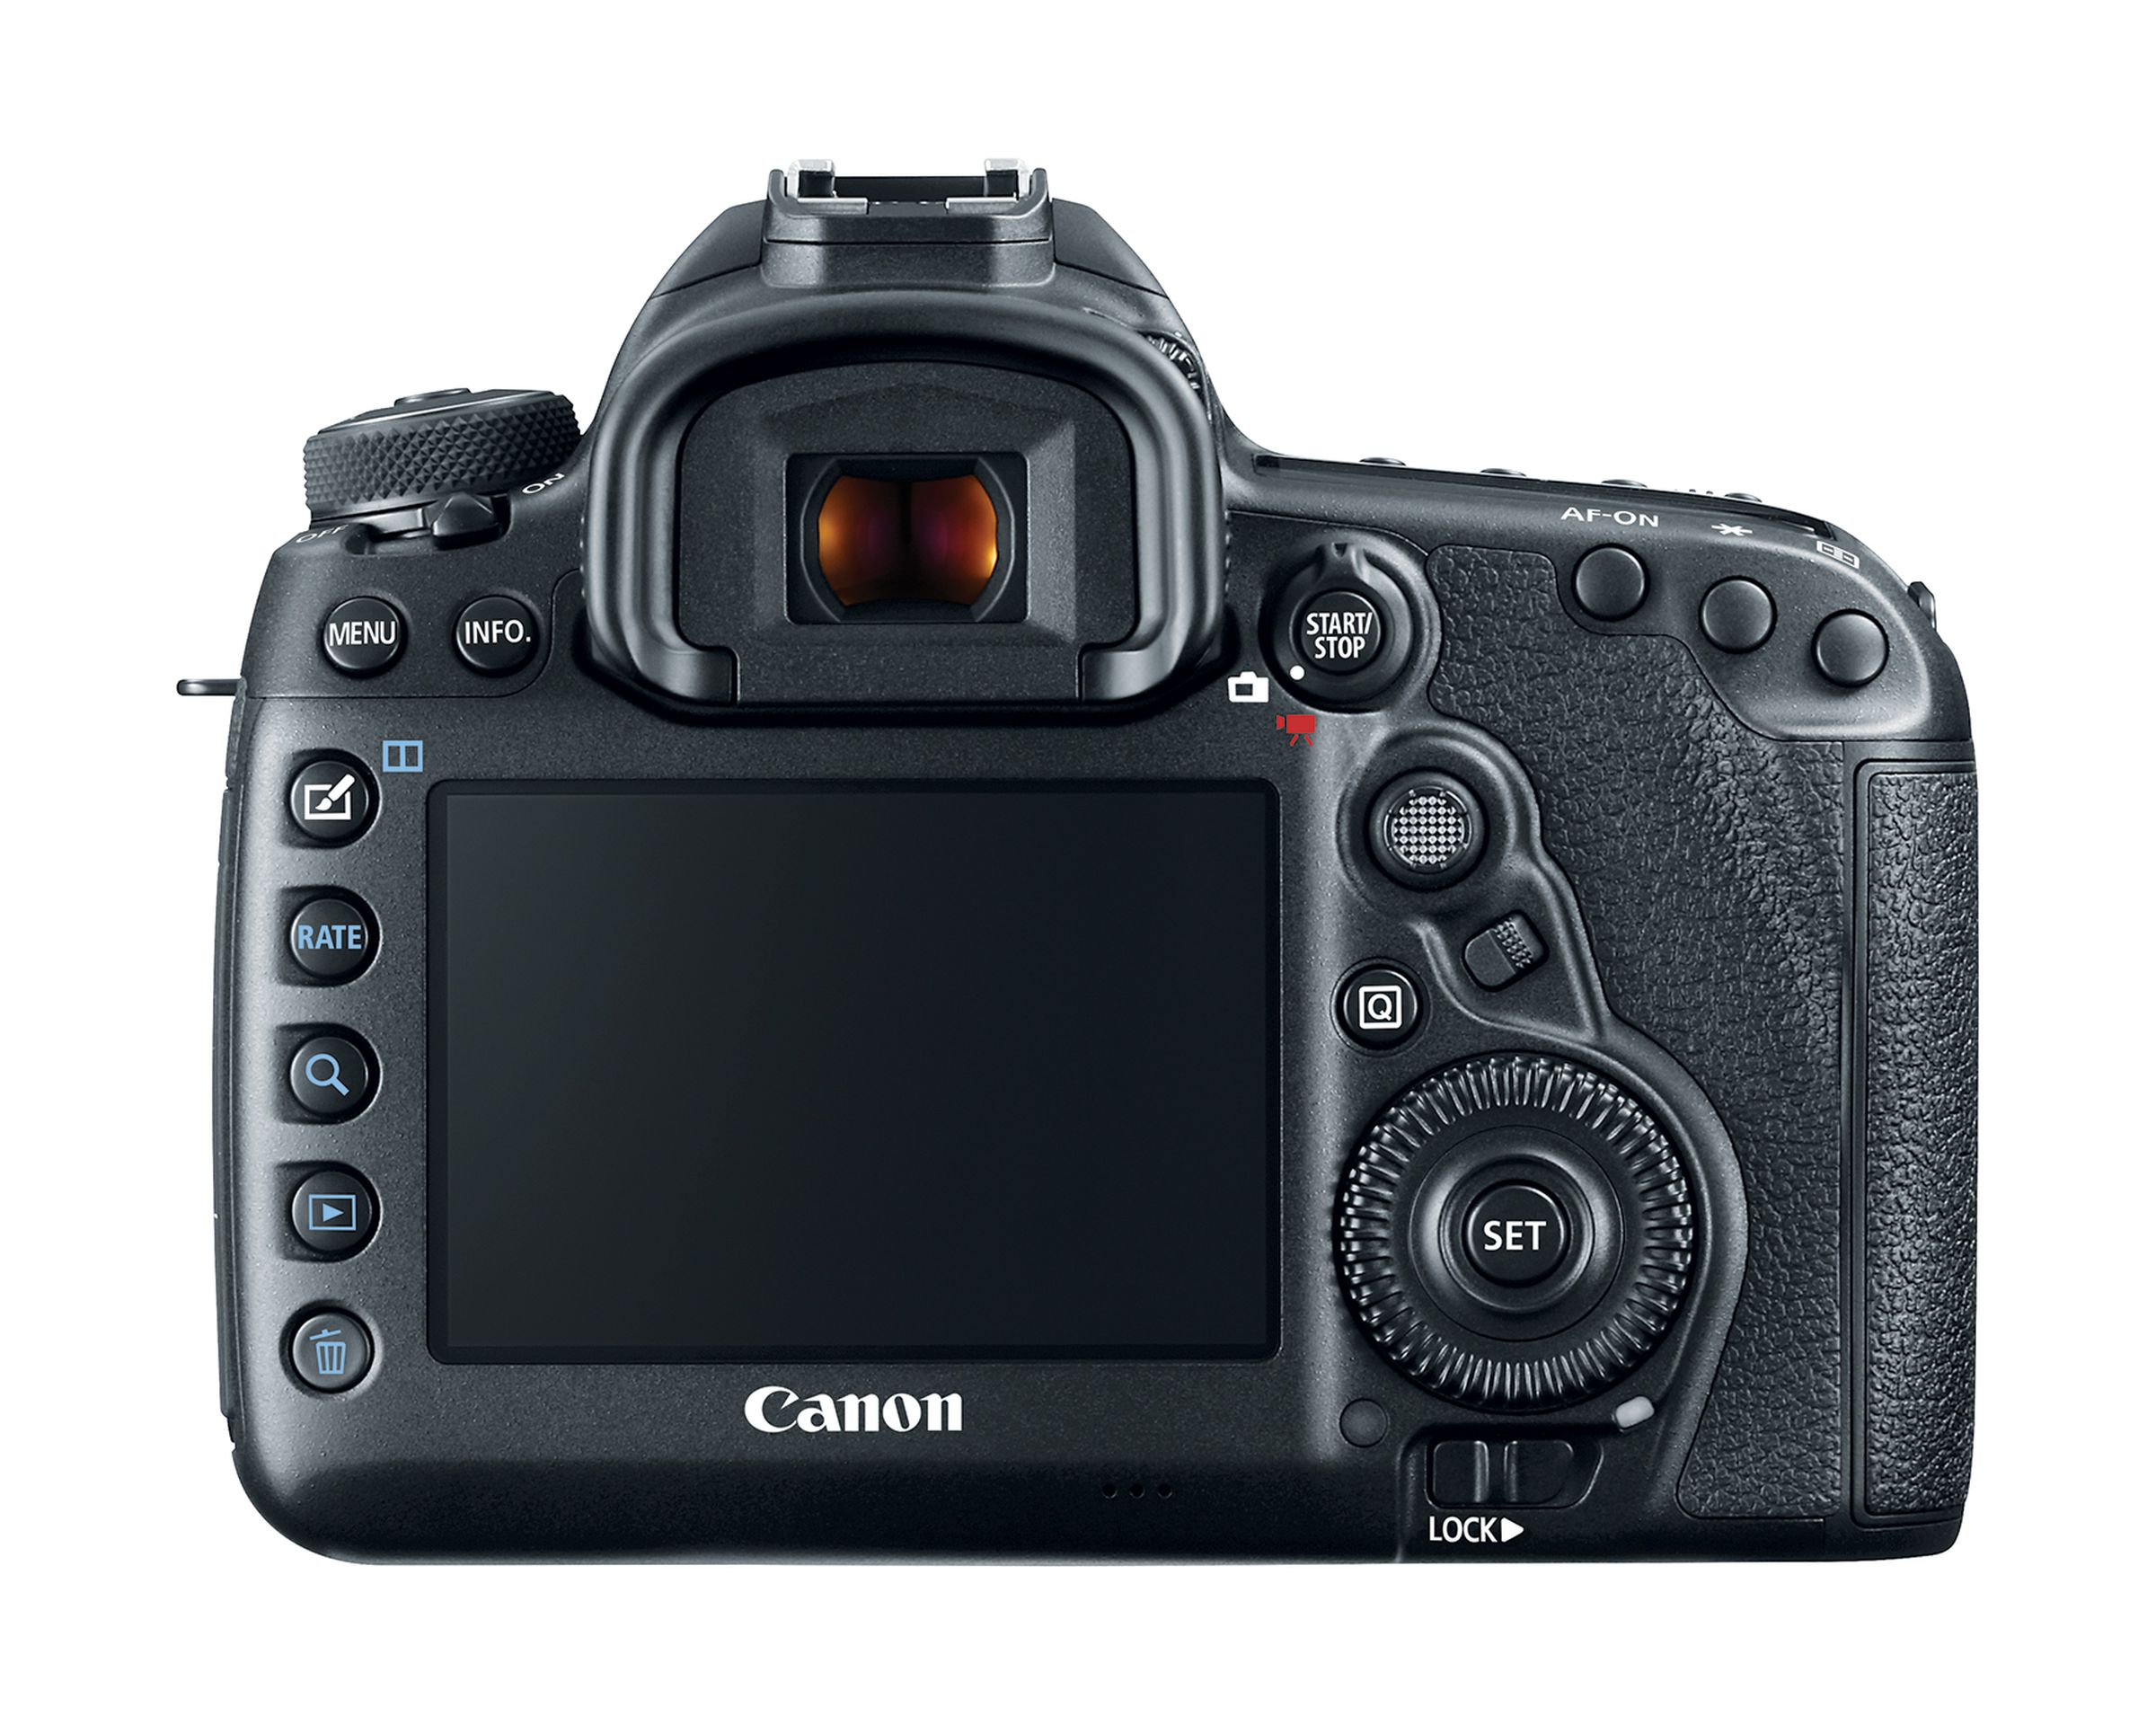 Canon 5D Mark IV in photos